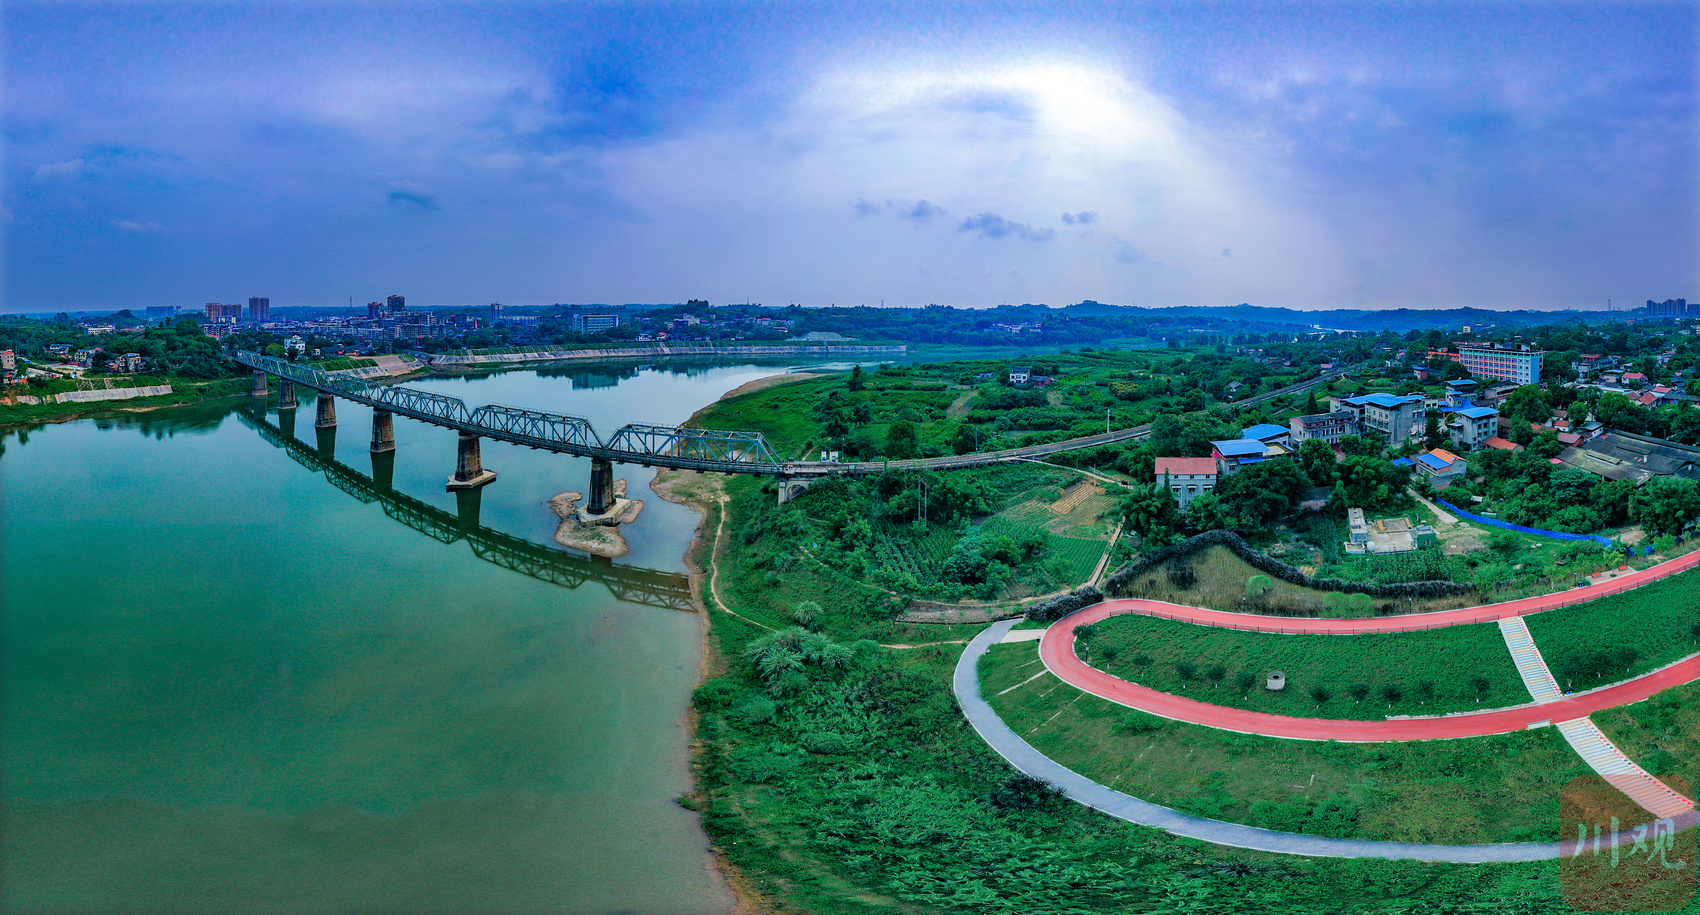 内江椑木铁桥图片